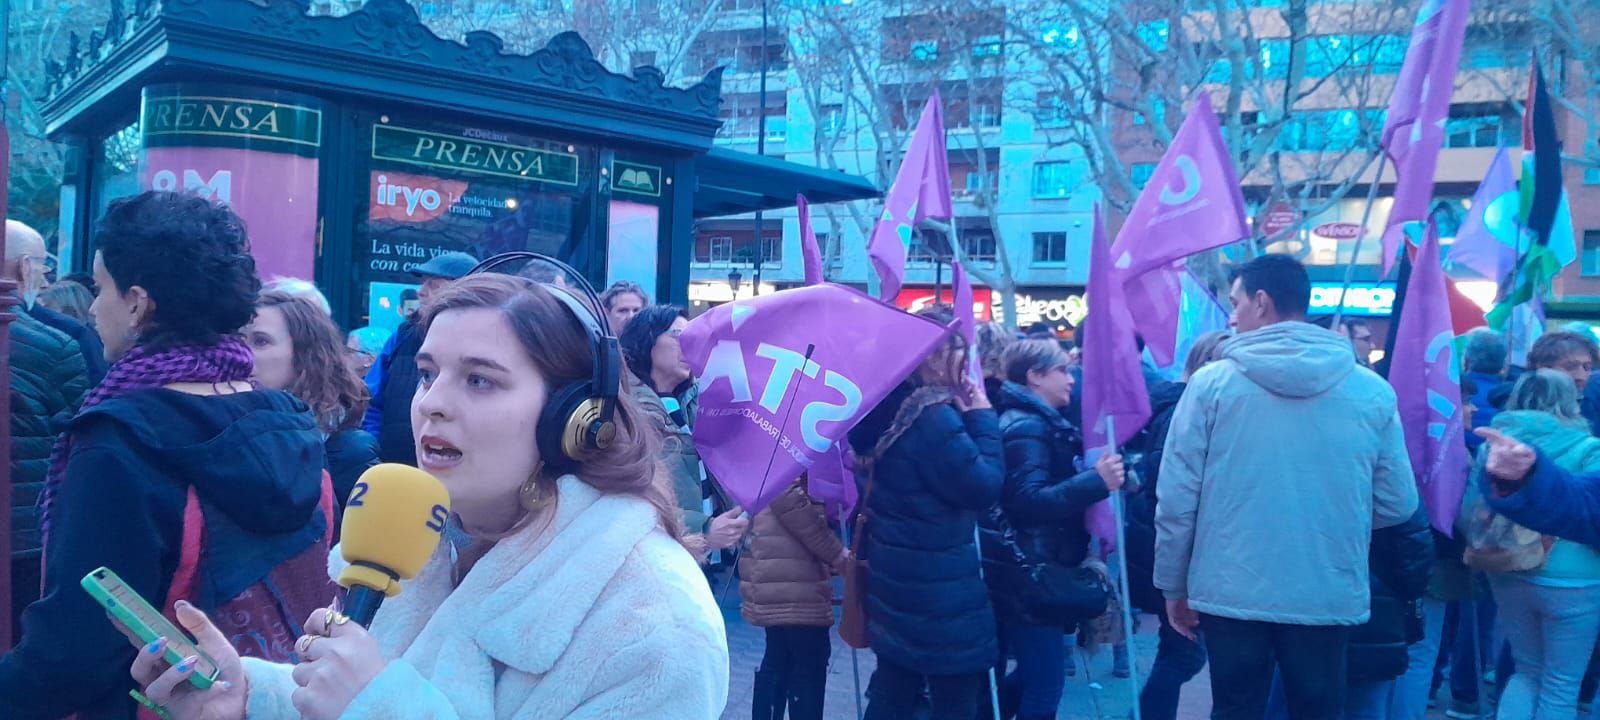 La manifestación del 8M desborda todas las ciudades de Aragón: "Seguimos aquí"